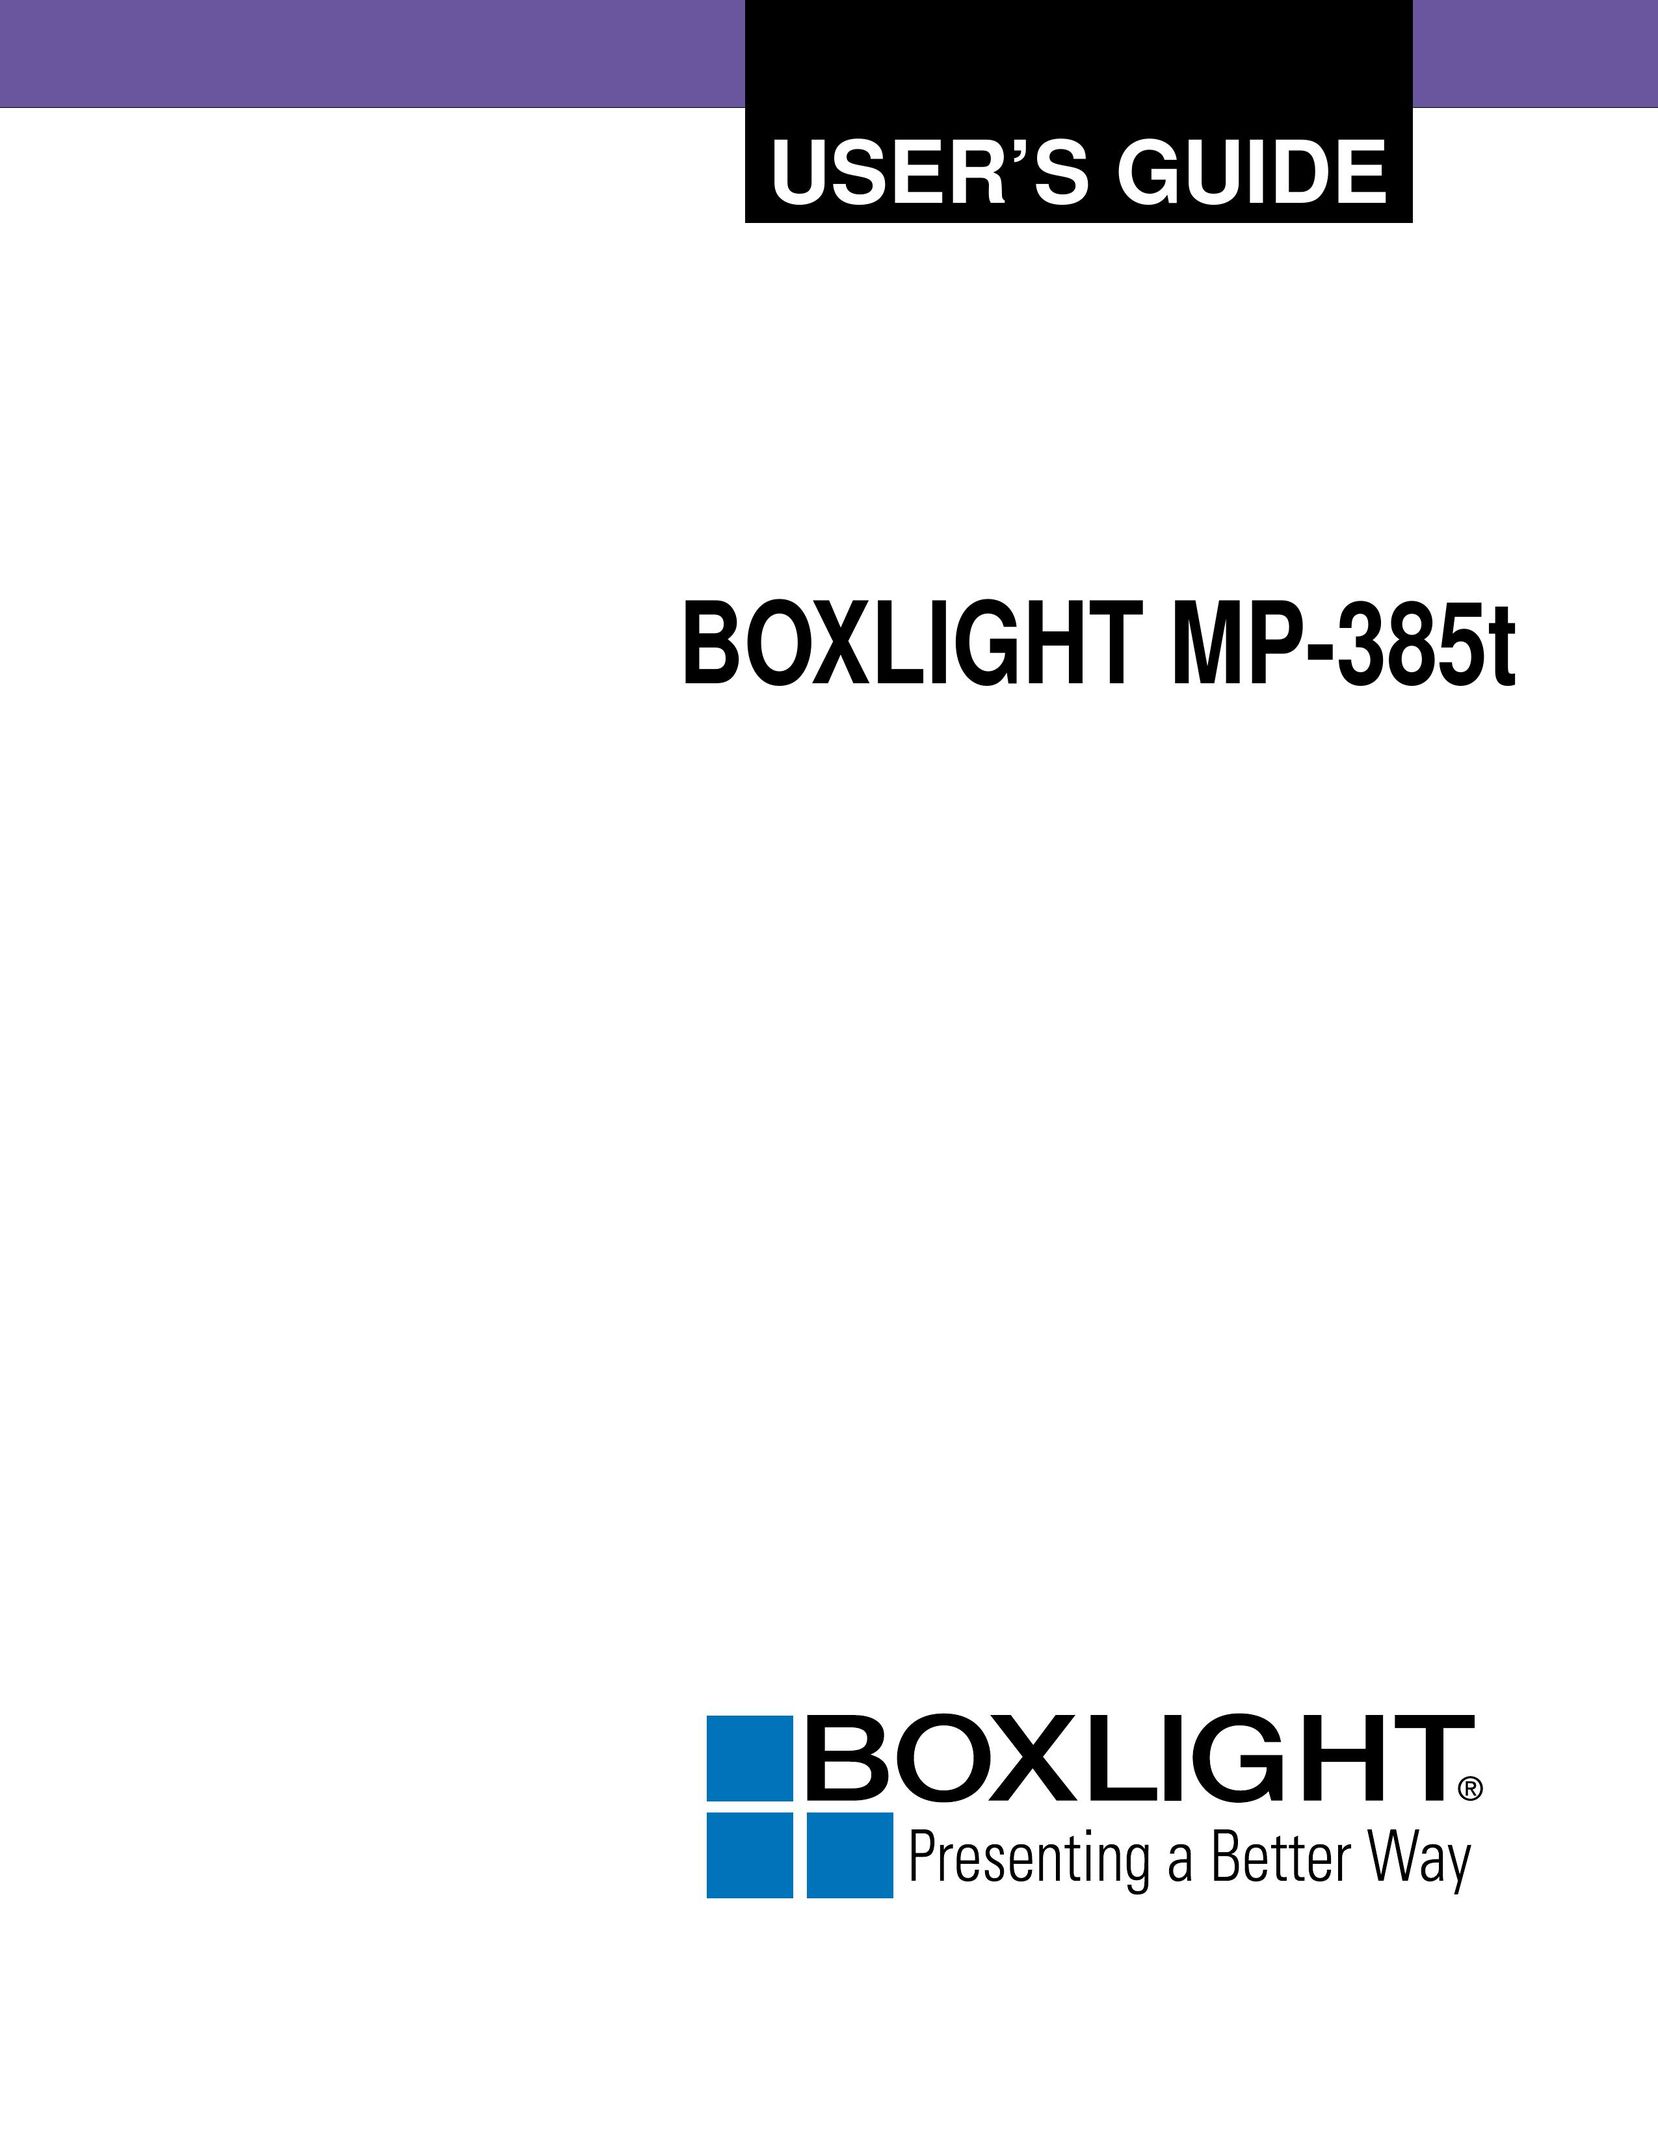 BOXLIGHT MP-385T Projector User Manual